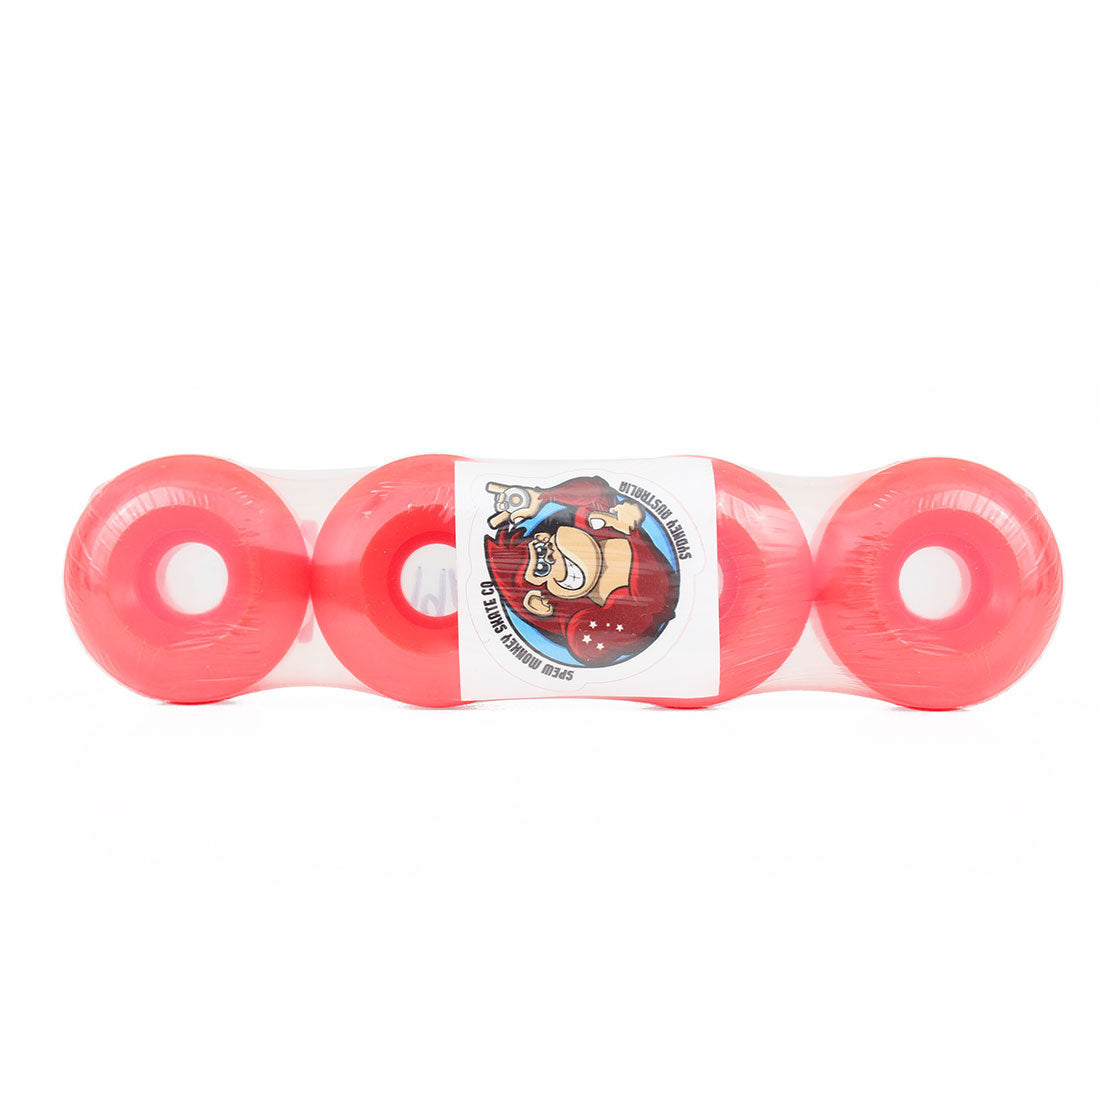 Spew Monkey #1s 54mm 99a Classic Wheels 4pk - Fluro Red Skateboard Wheels